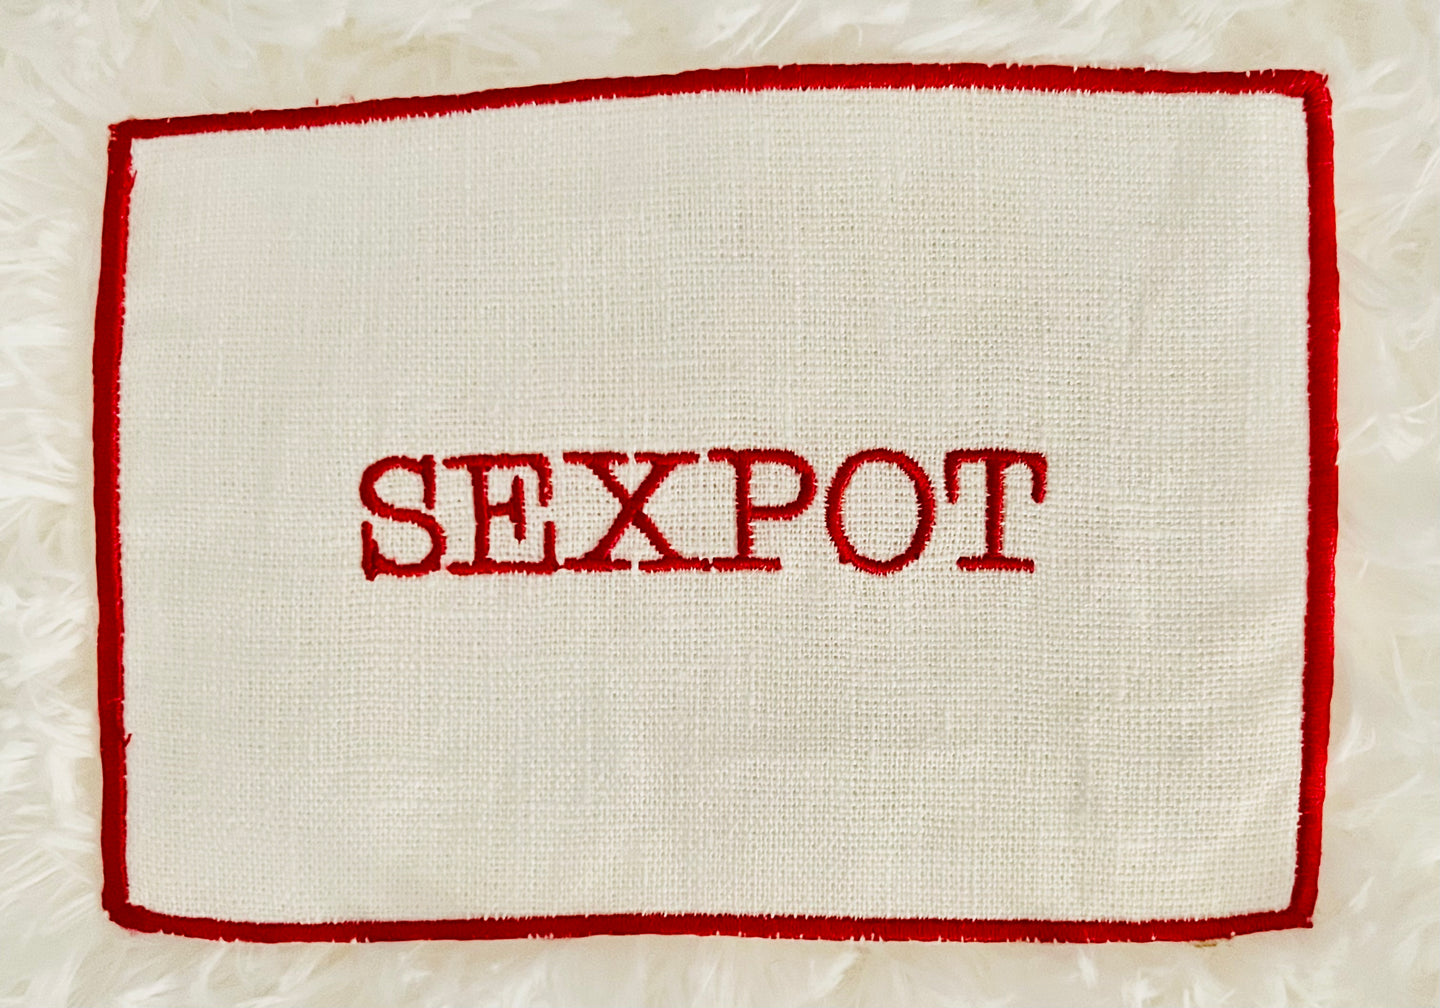 Sexpot